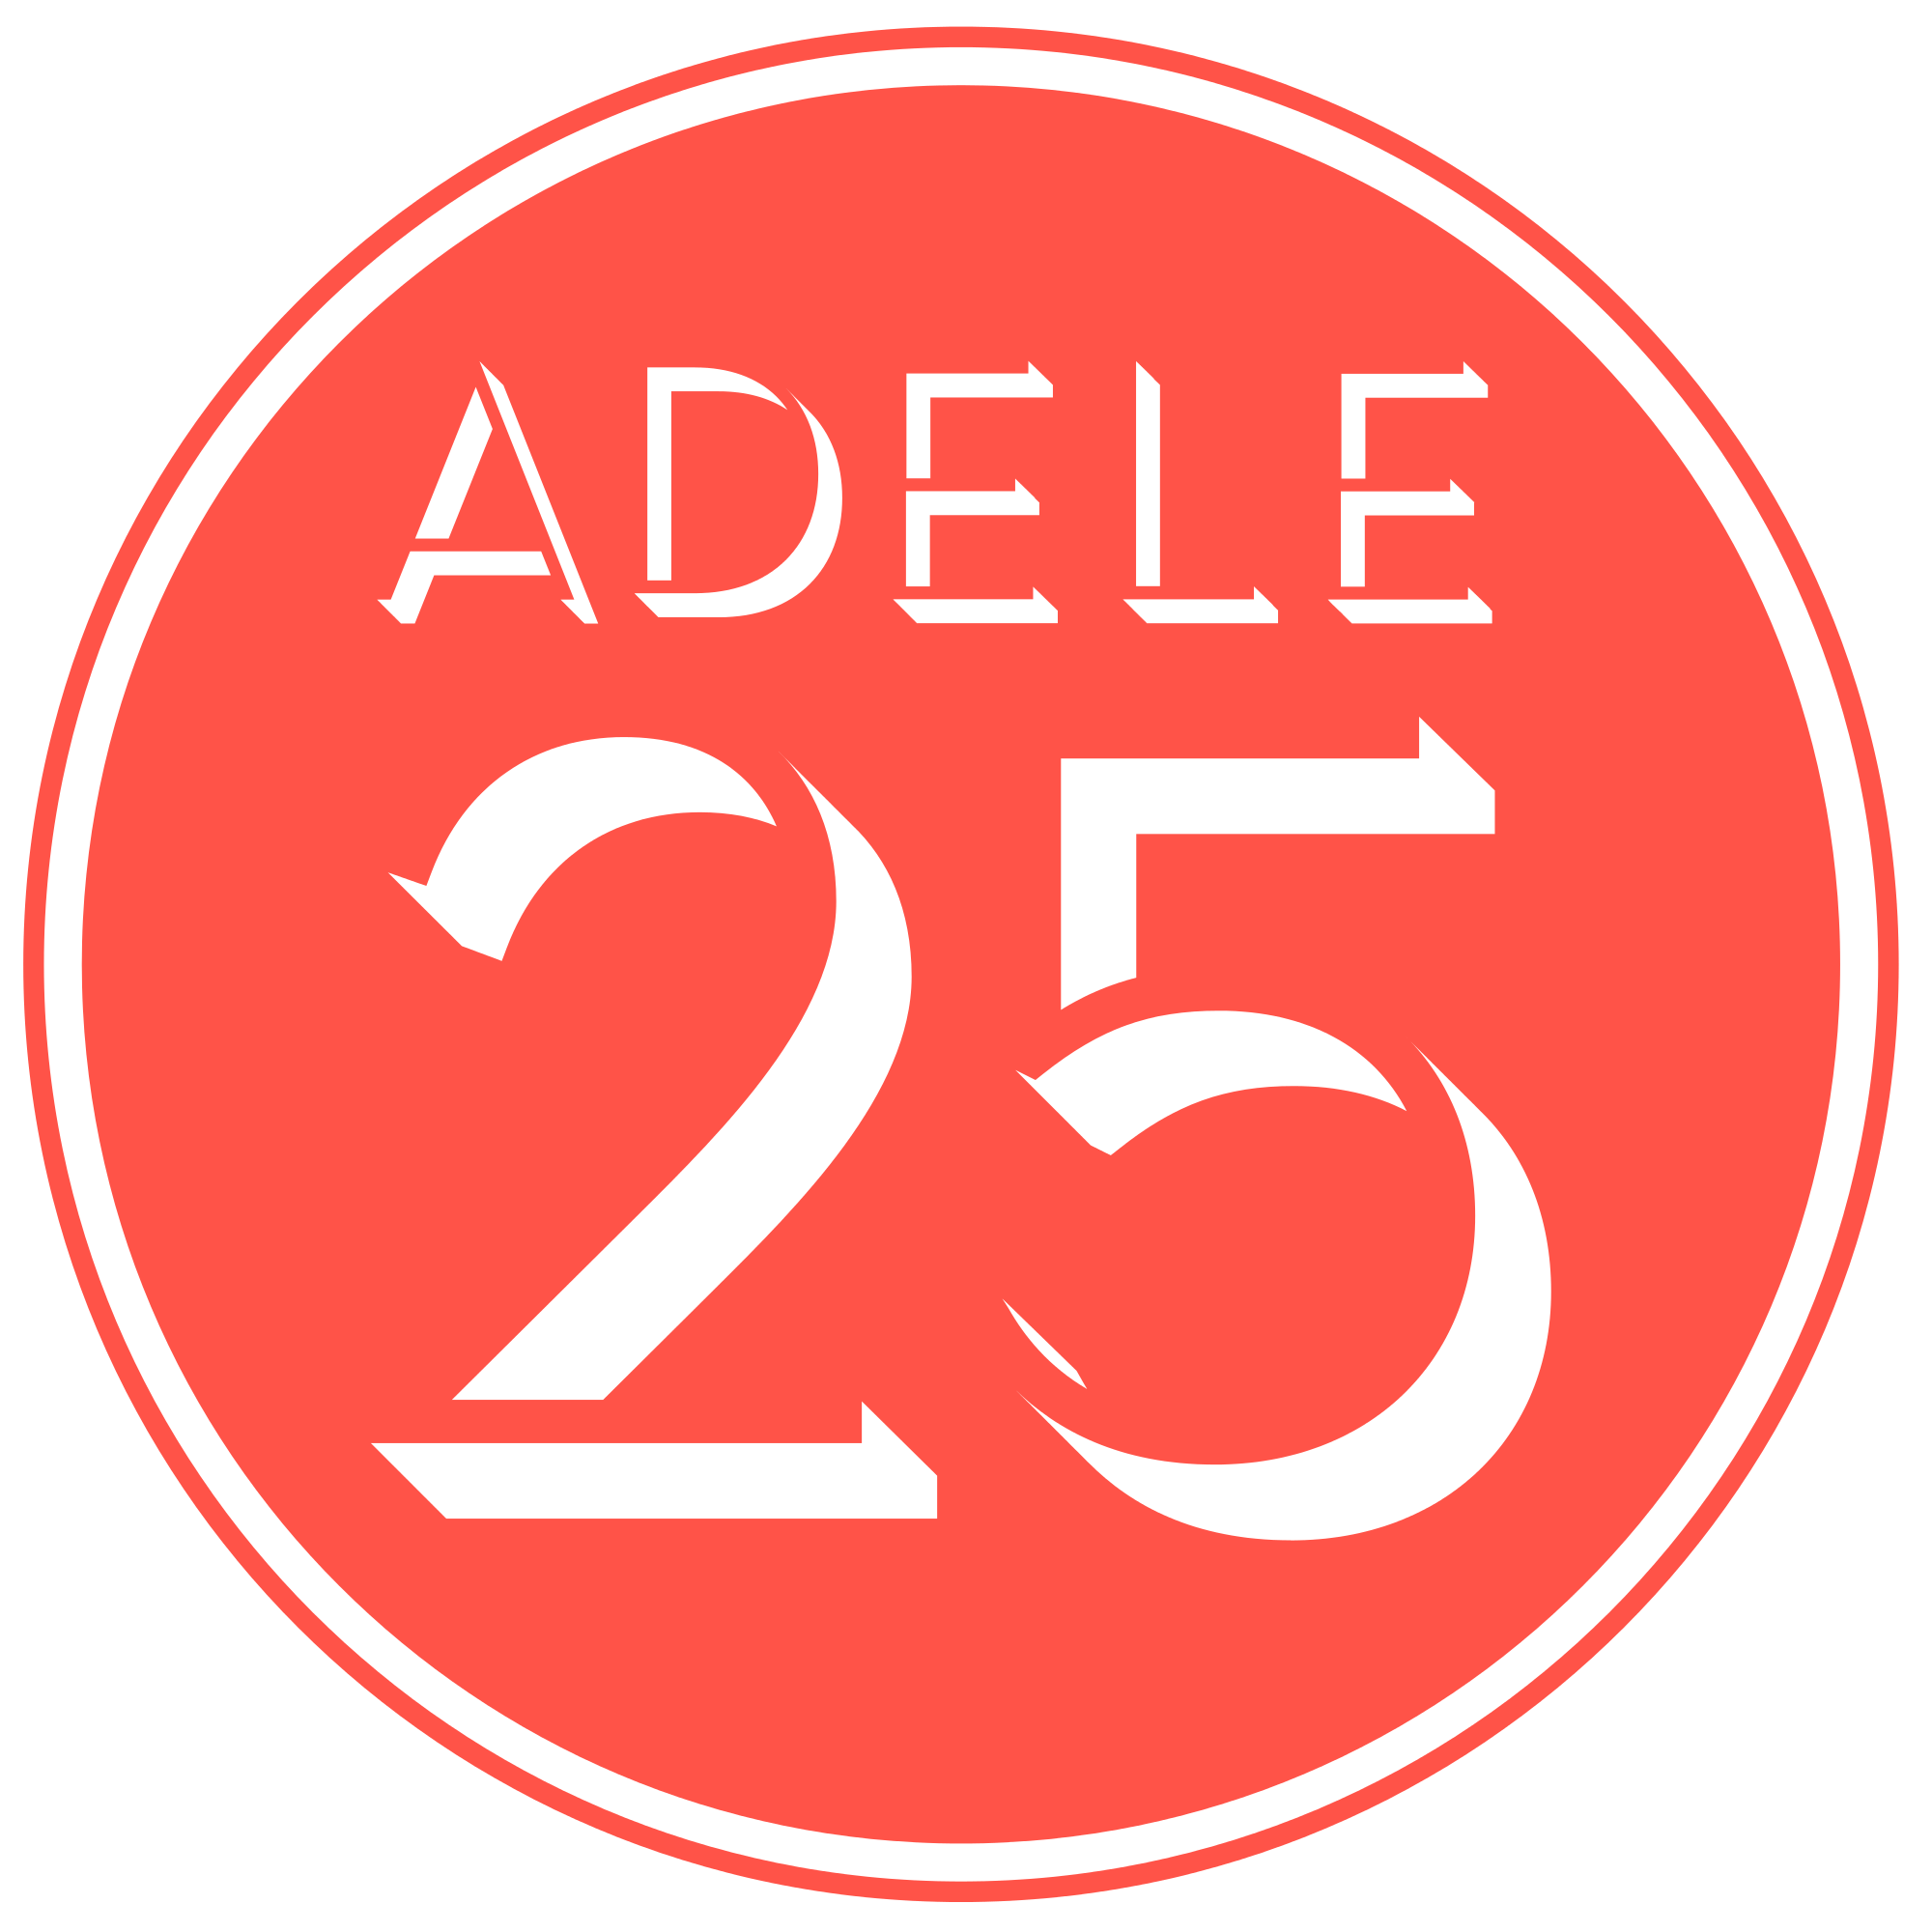 Adele Logo - Adele 25 Logo.svg